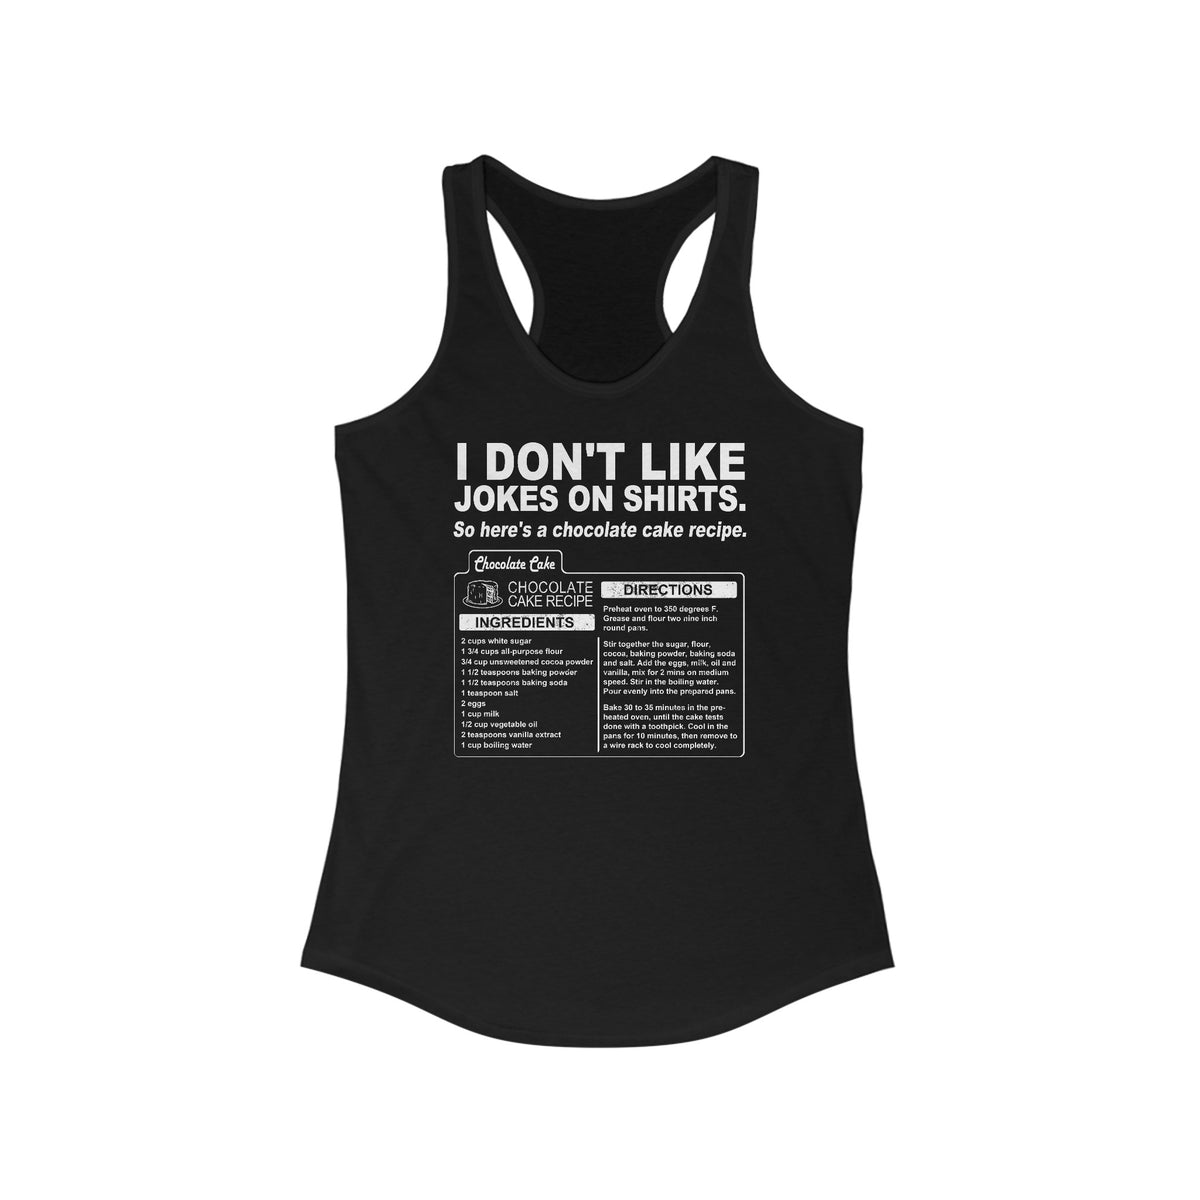 I Don't Like Jokes On Shirts. - Women's Racerback Tank